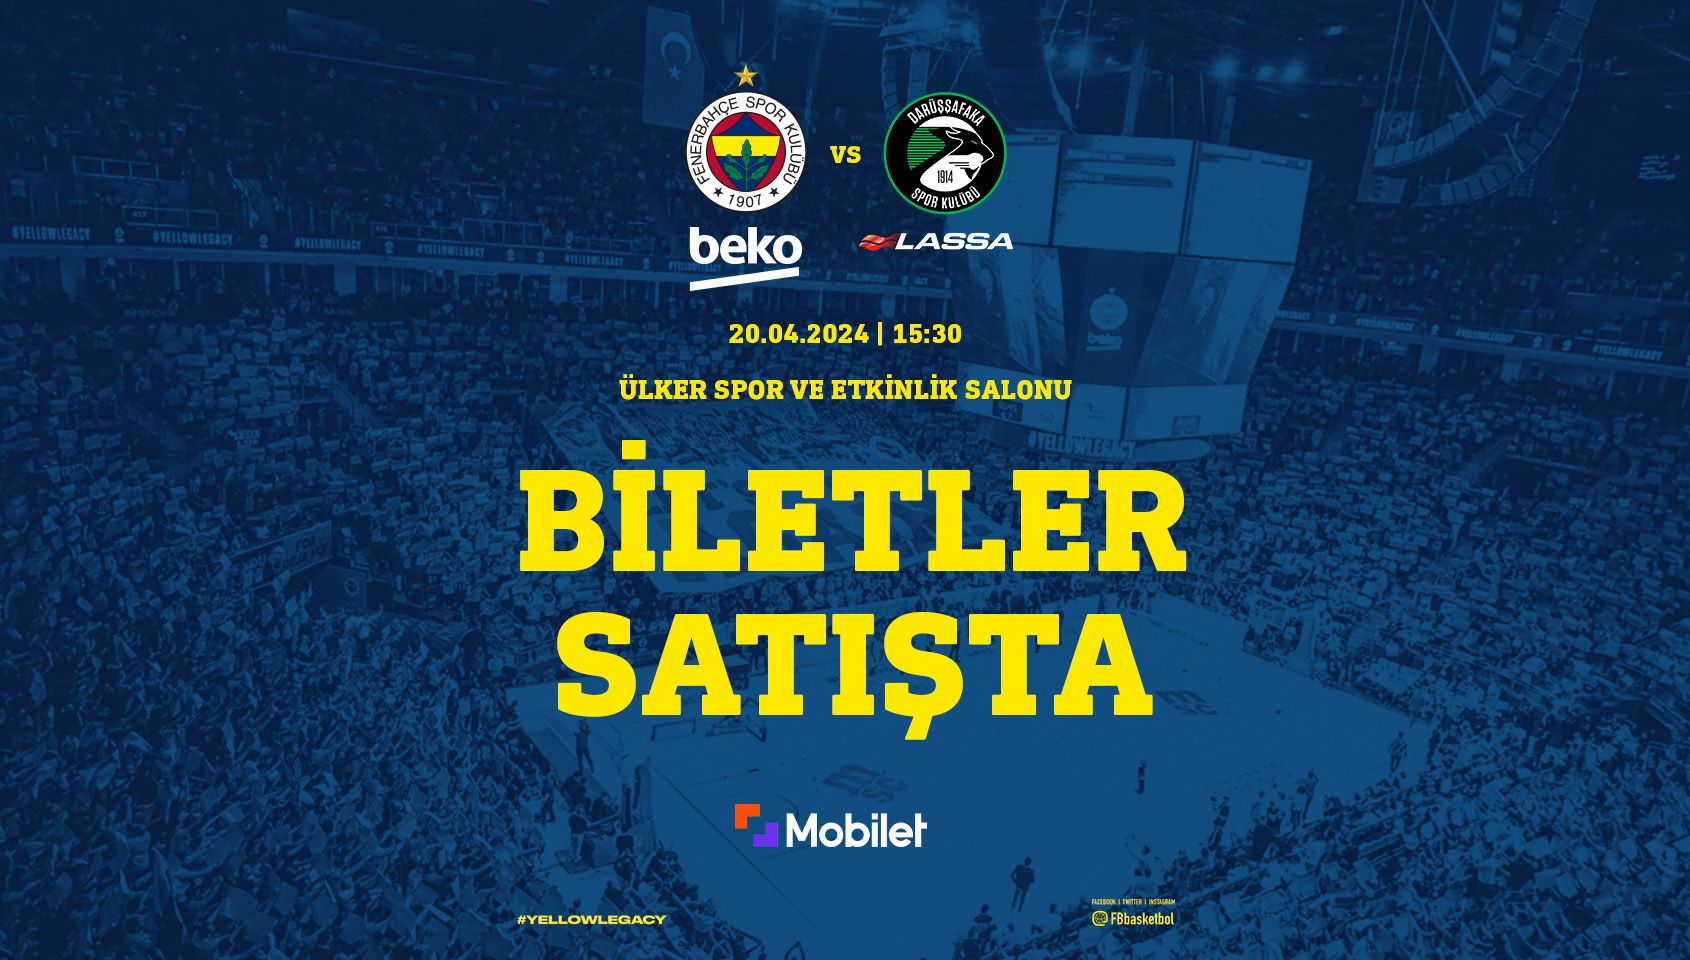 Fenerbahçe Beko - Darüşşafaka Lassa - Ülker Spor ve Etkinlik Salonu - İstanbul